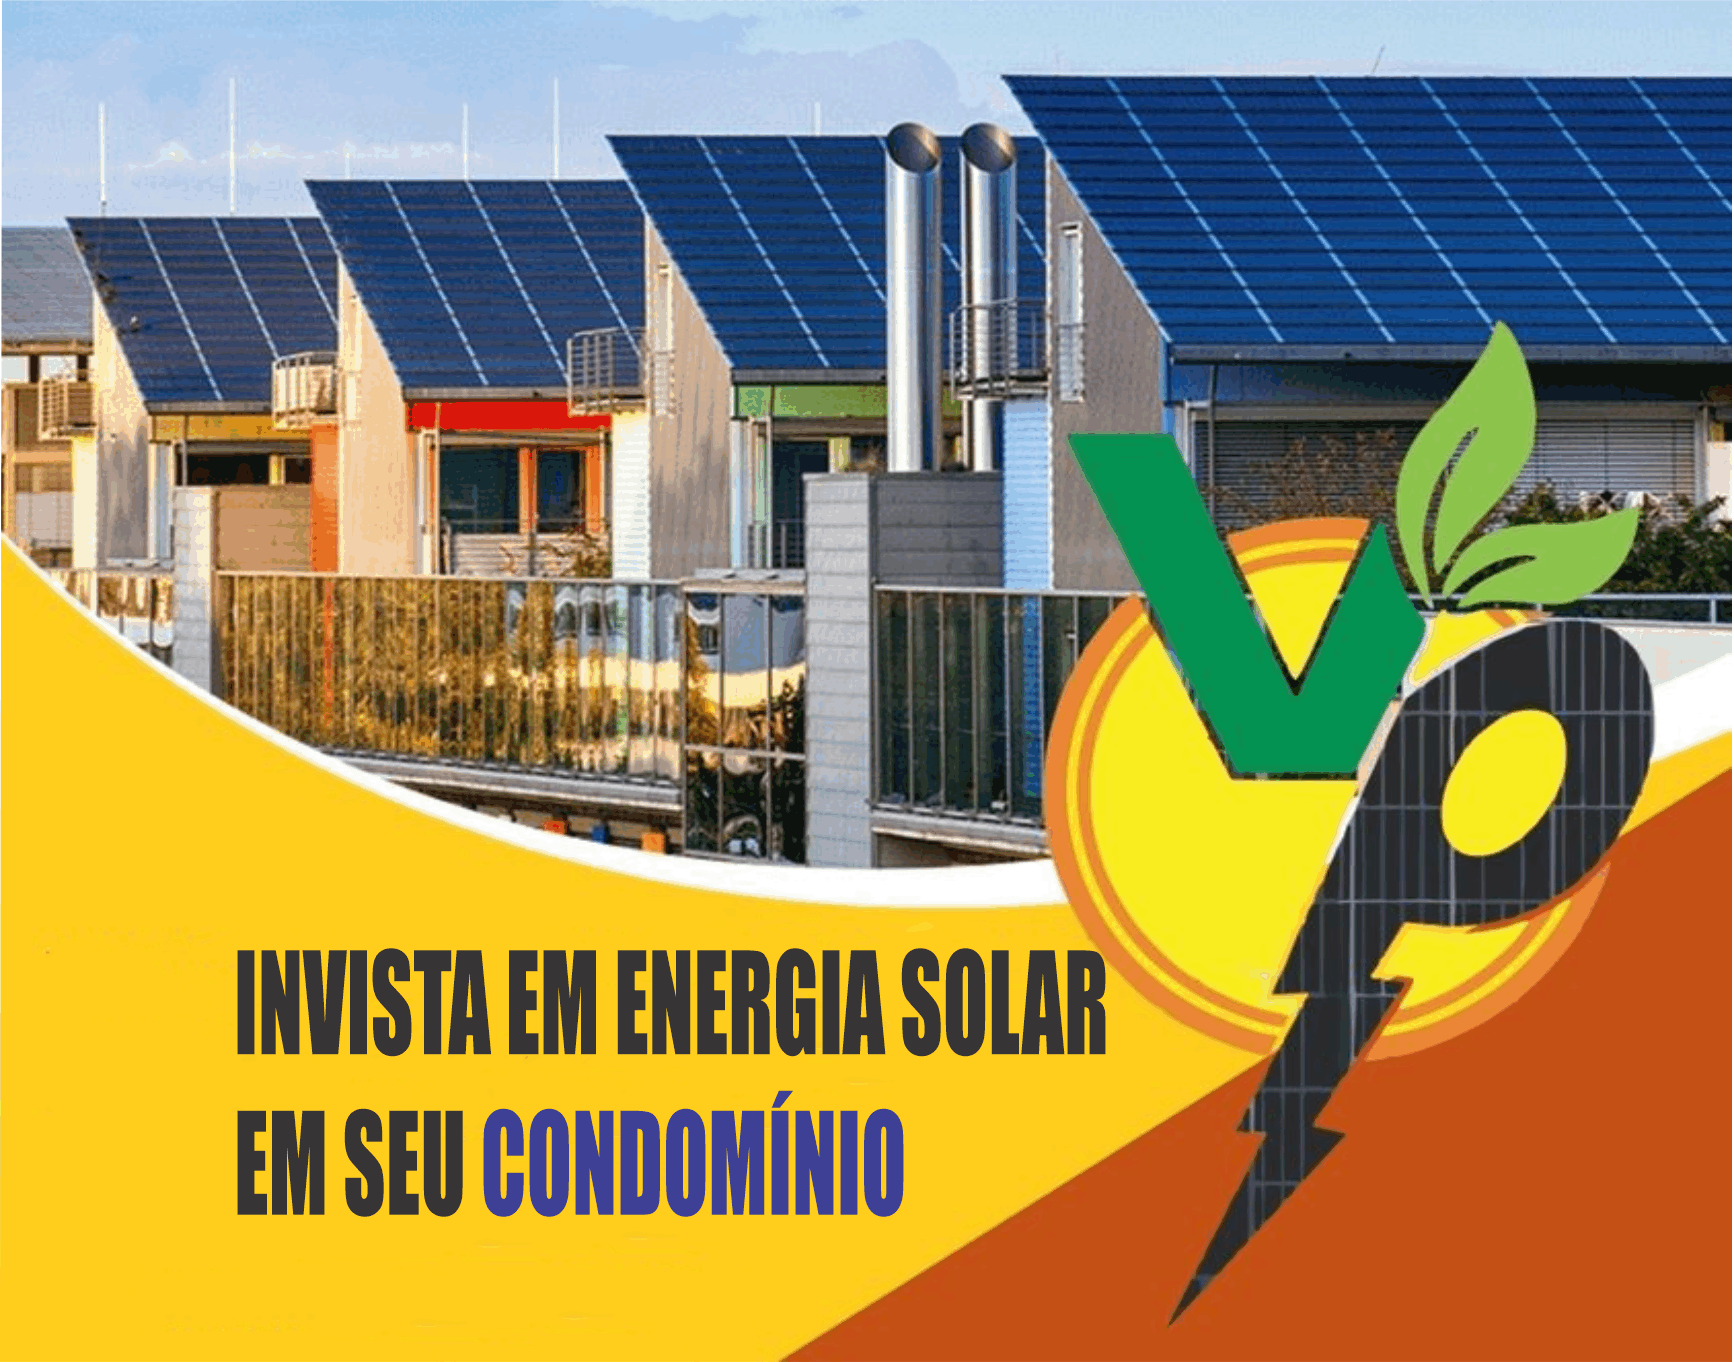 Volper Solar Energia Solar      RUA HUXLEY, 19, COLOMBO - PR  Fones: (41) 99535-0959 / (41) 99661-7998